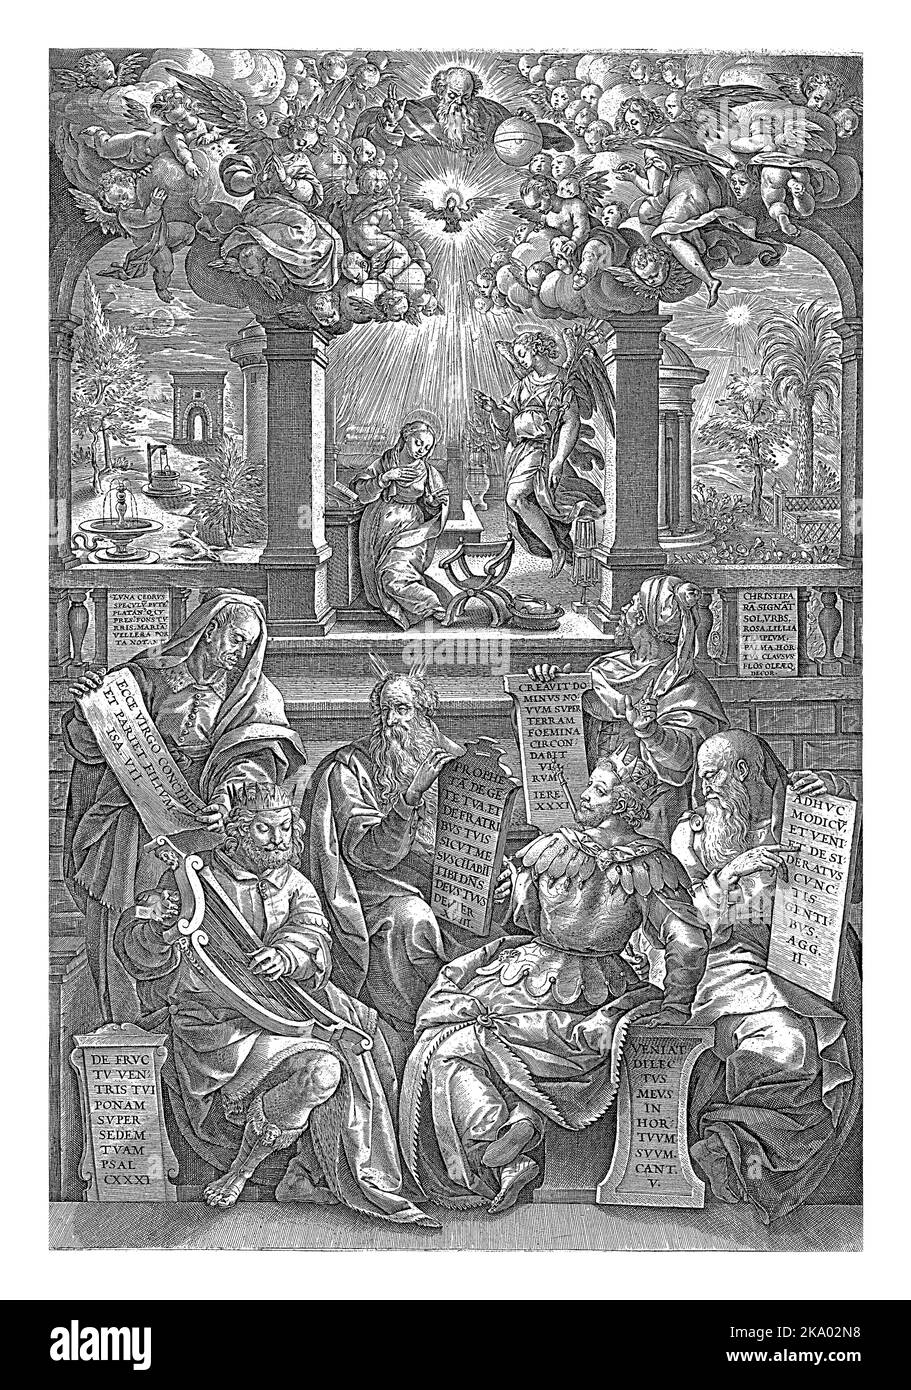 Les six prophètes qui ont annoncé la venue de Christ, assis par un escalier menant à une pièce dans laquelle l'ange Gabriel annonce la naissance de Christ Banque D'Images